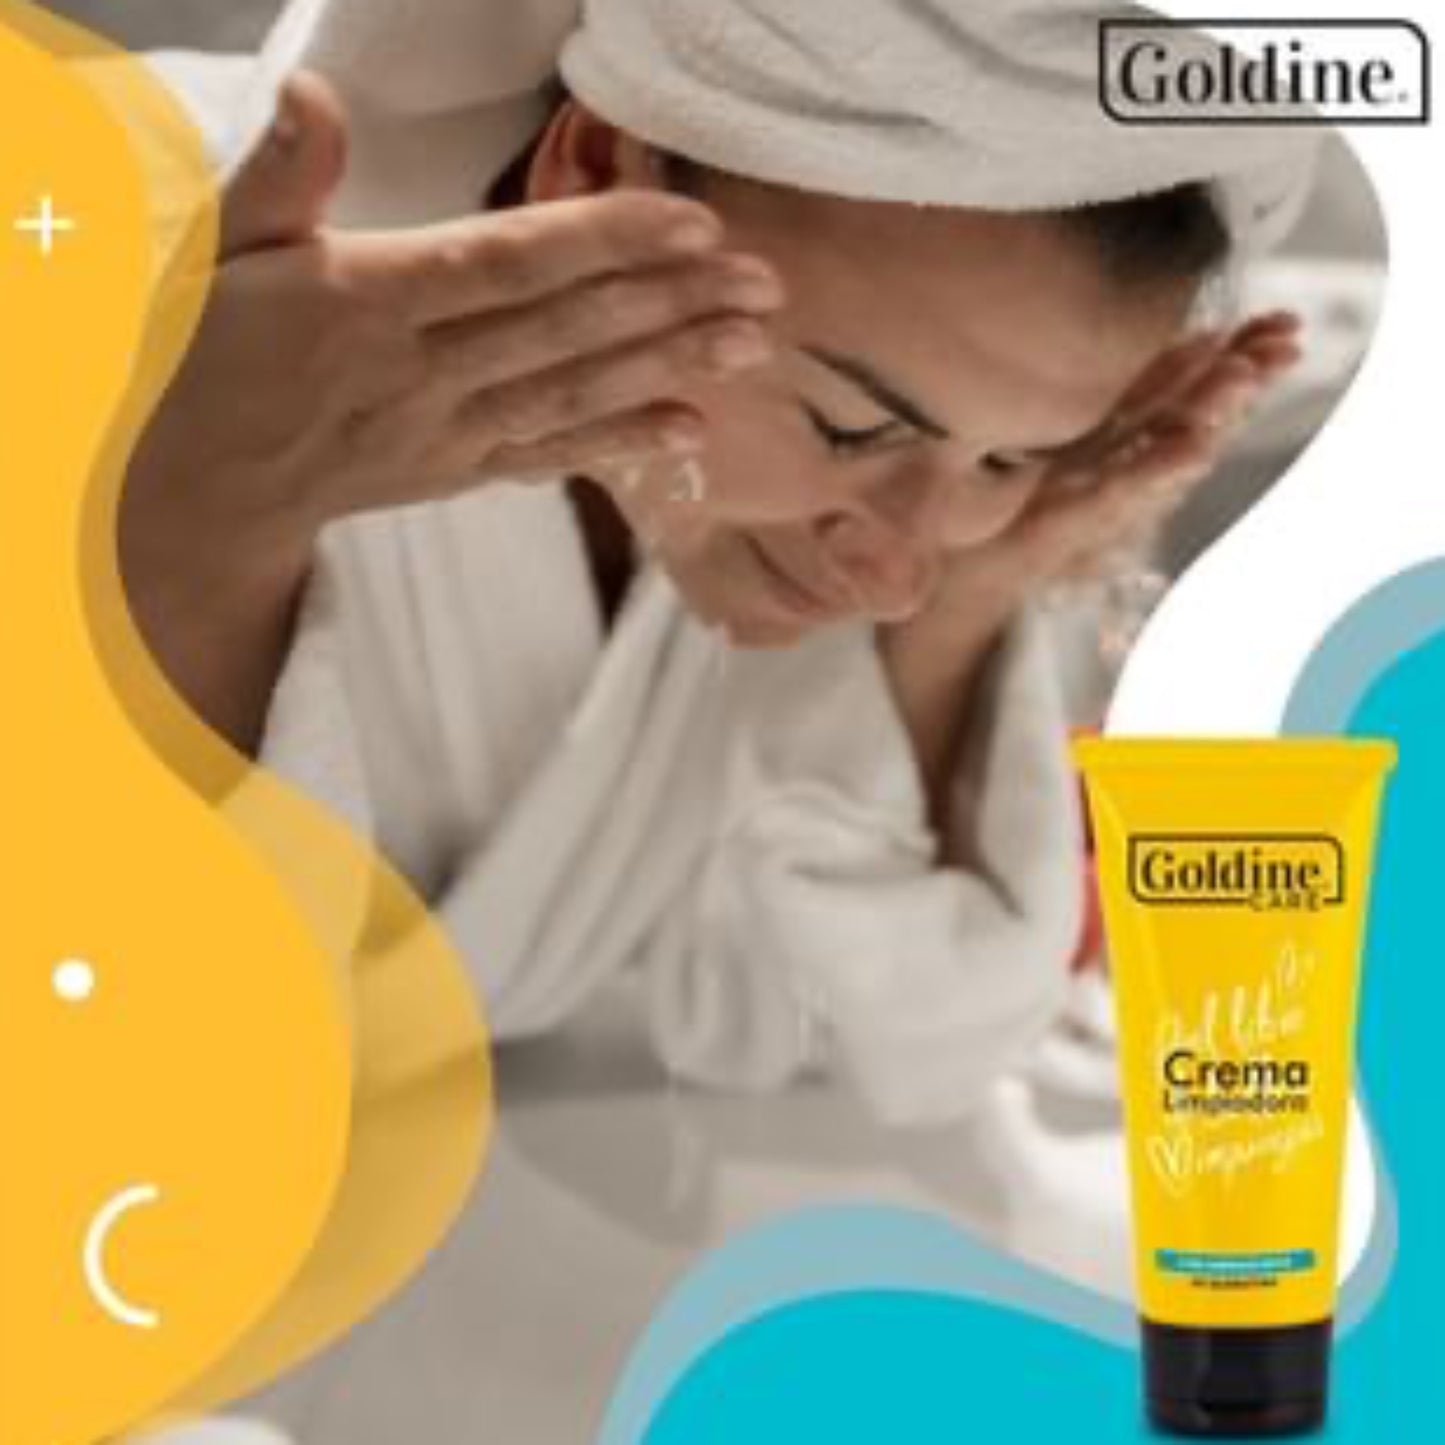 Crema limpiadora facial Goldine limpia con suavidad y profundamente la piel, desmaquilla ojos, ideal para piel normal y seca.